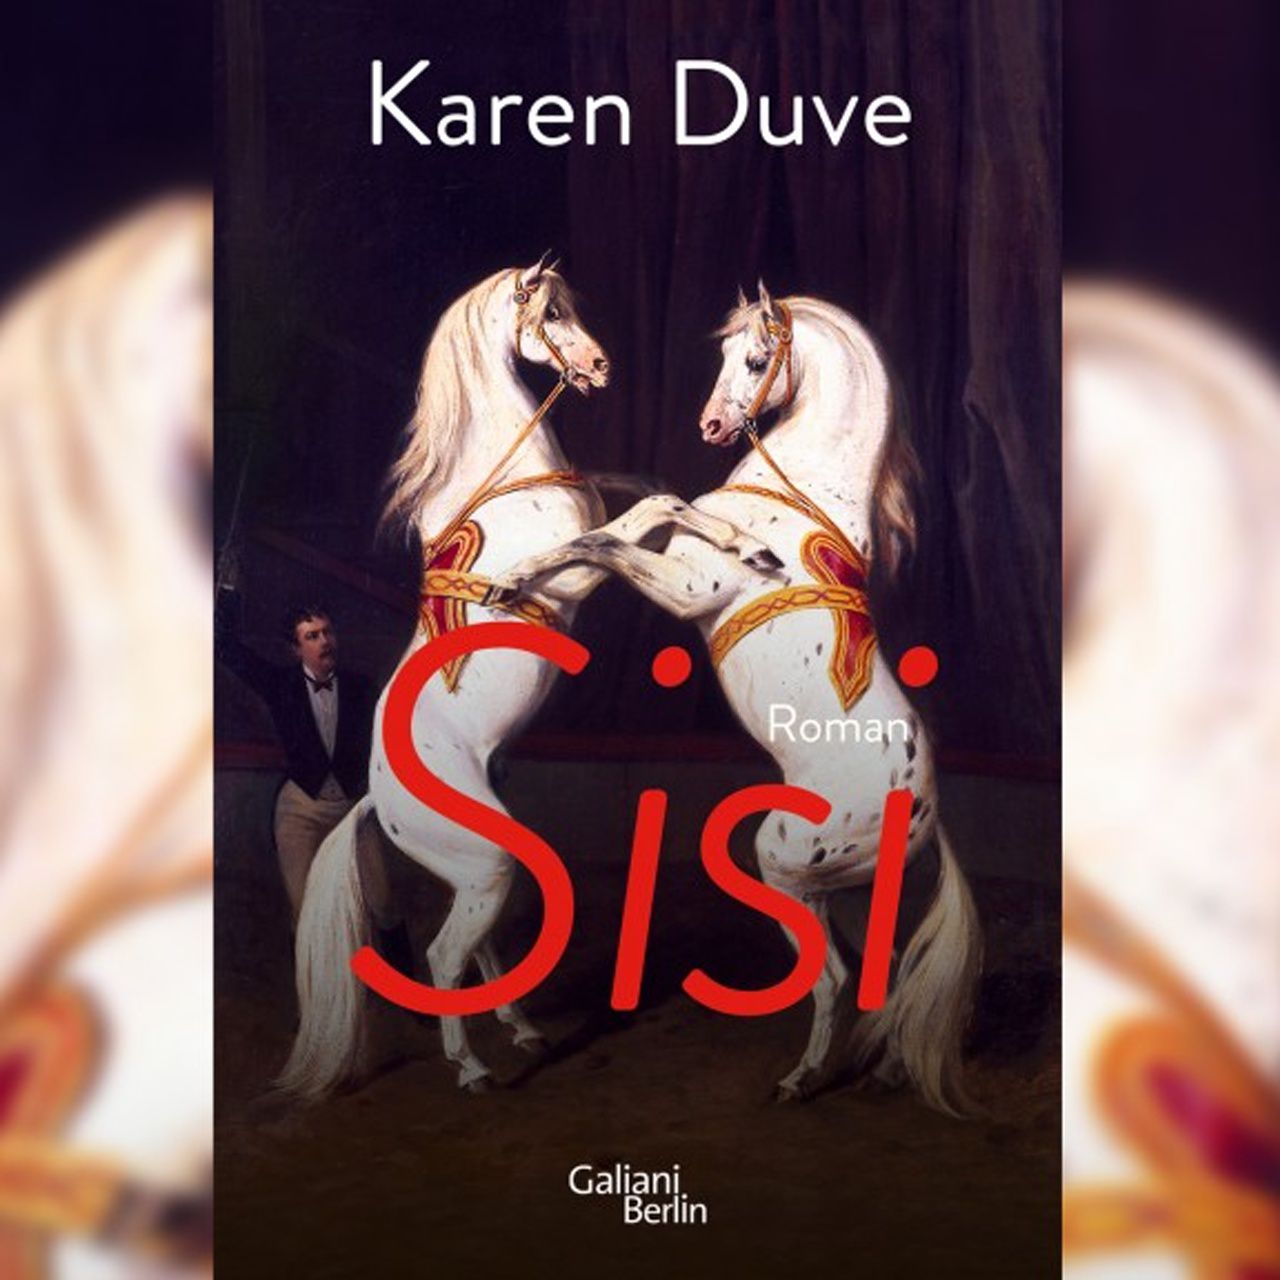 Karen Duve zu ihrem Roman: „Sisi"